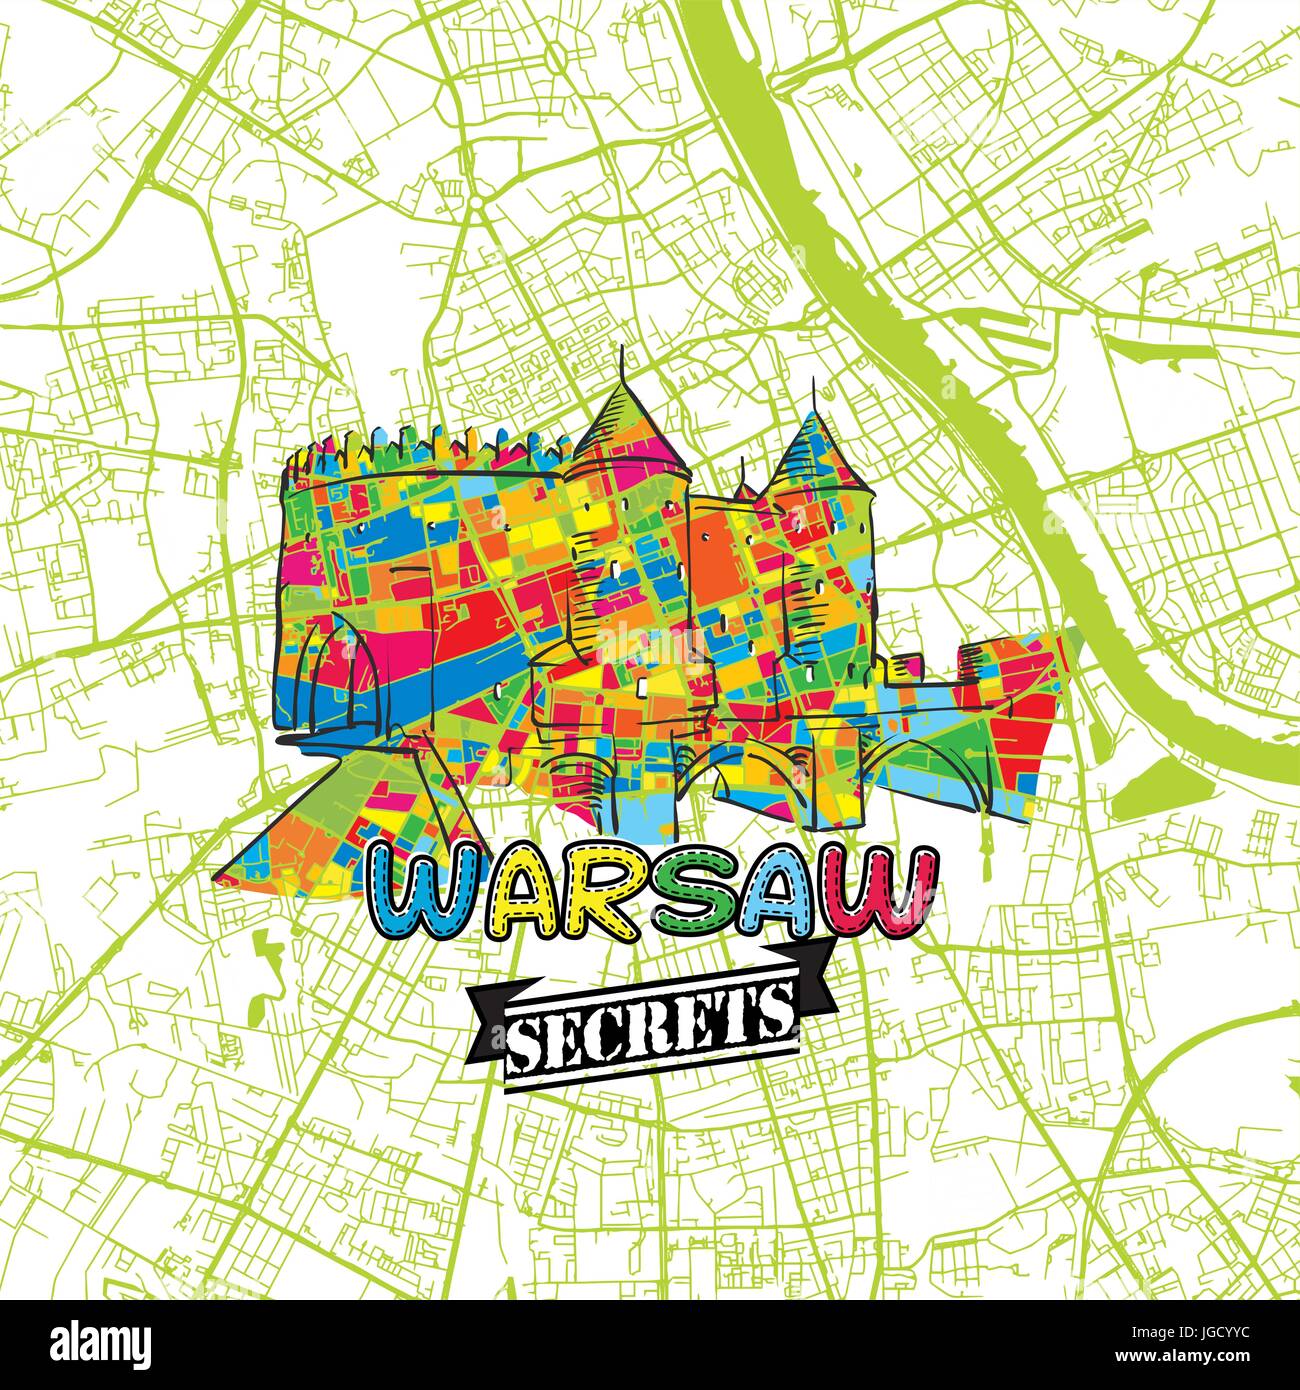 Warschau Reisen Geheimnisse Art Map für die Zuordnung von Experten und Reiseführer. Handgemachte Stadt Logo, Typo-Abzeichen und Hand gezeichnete Vektor-Bild an der Spitze sind gruppiert und Stock Vektor